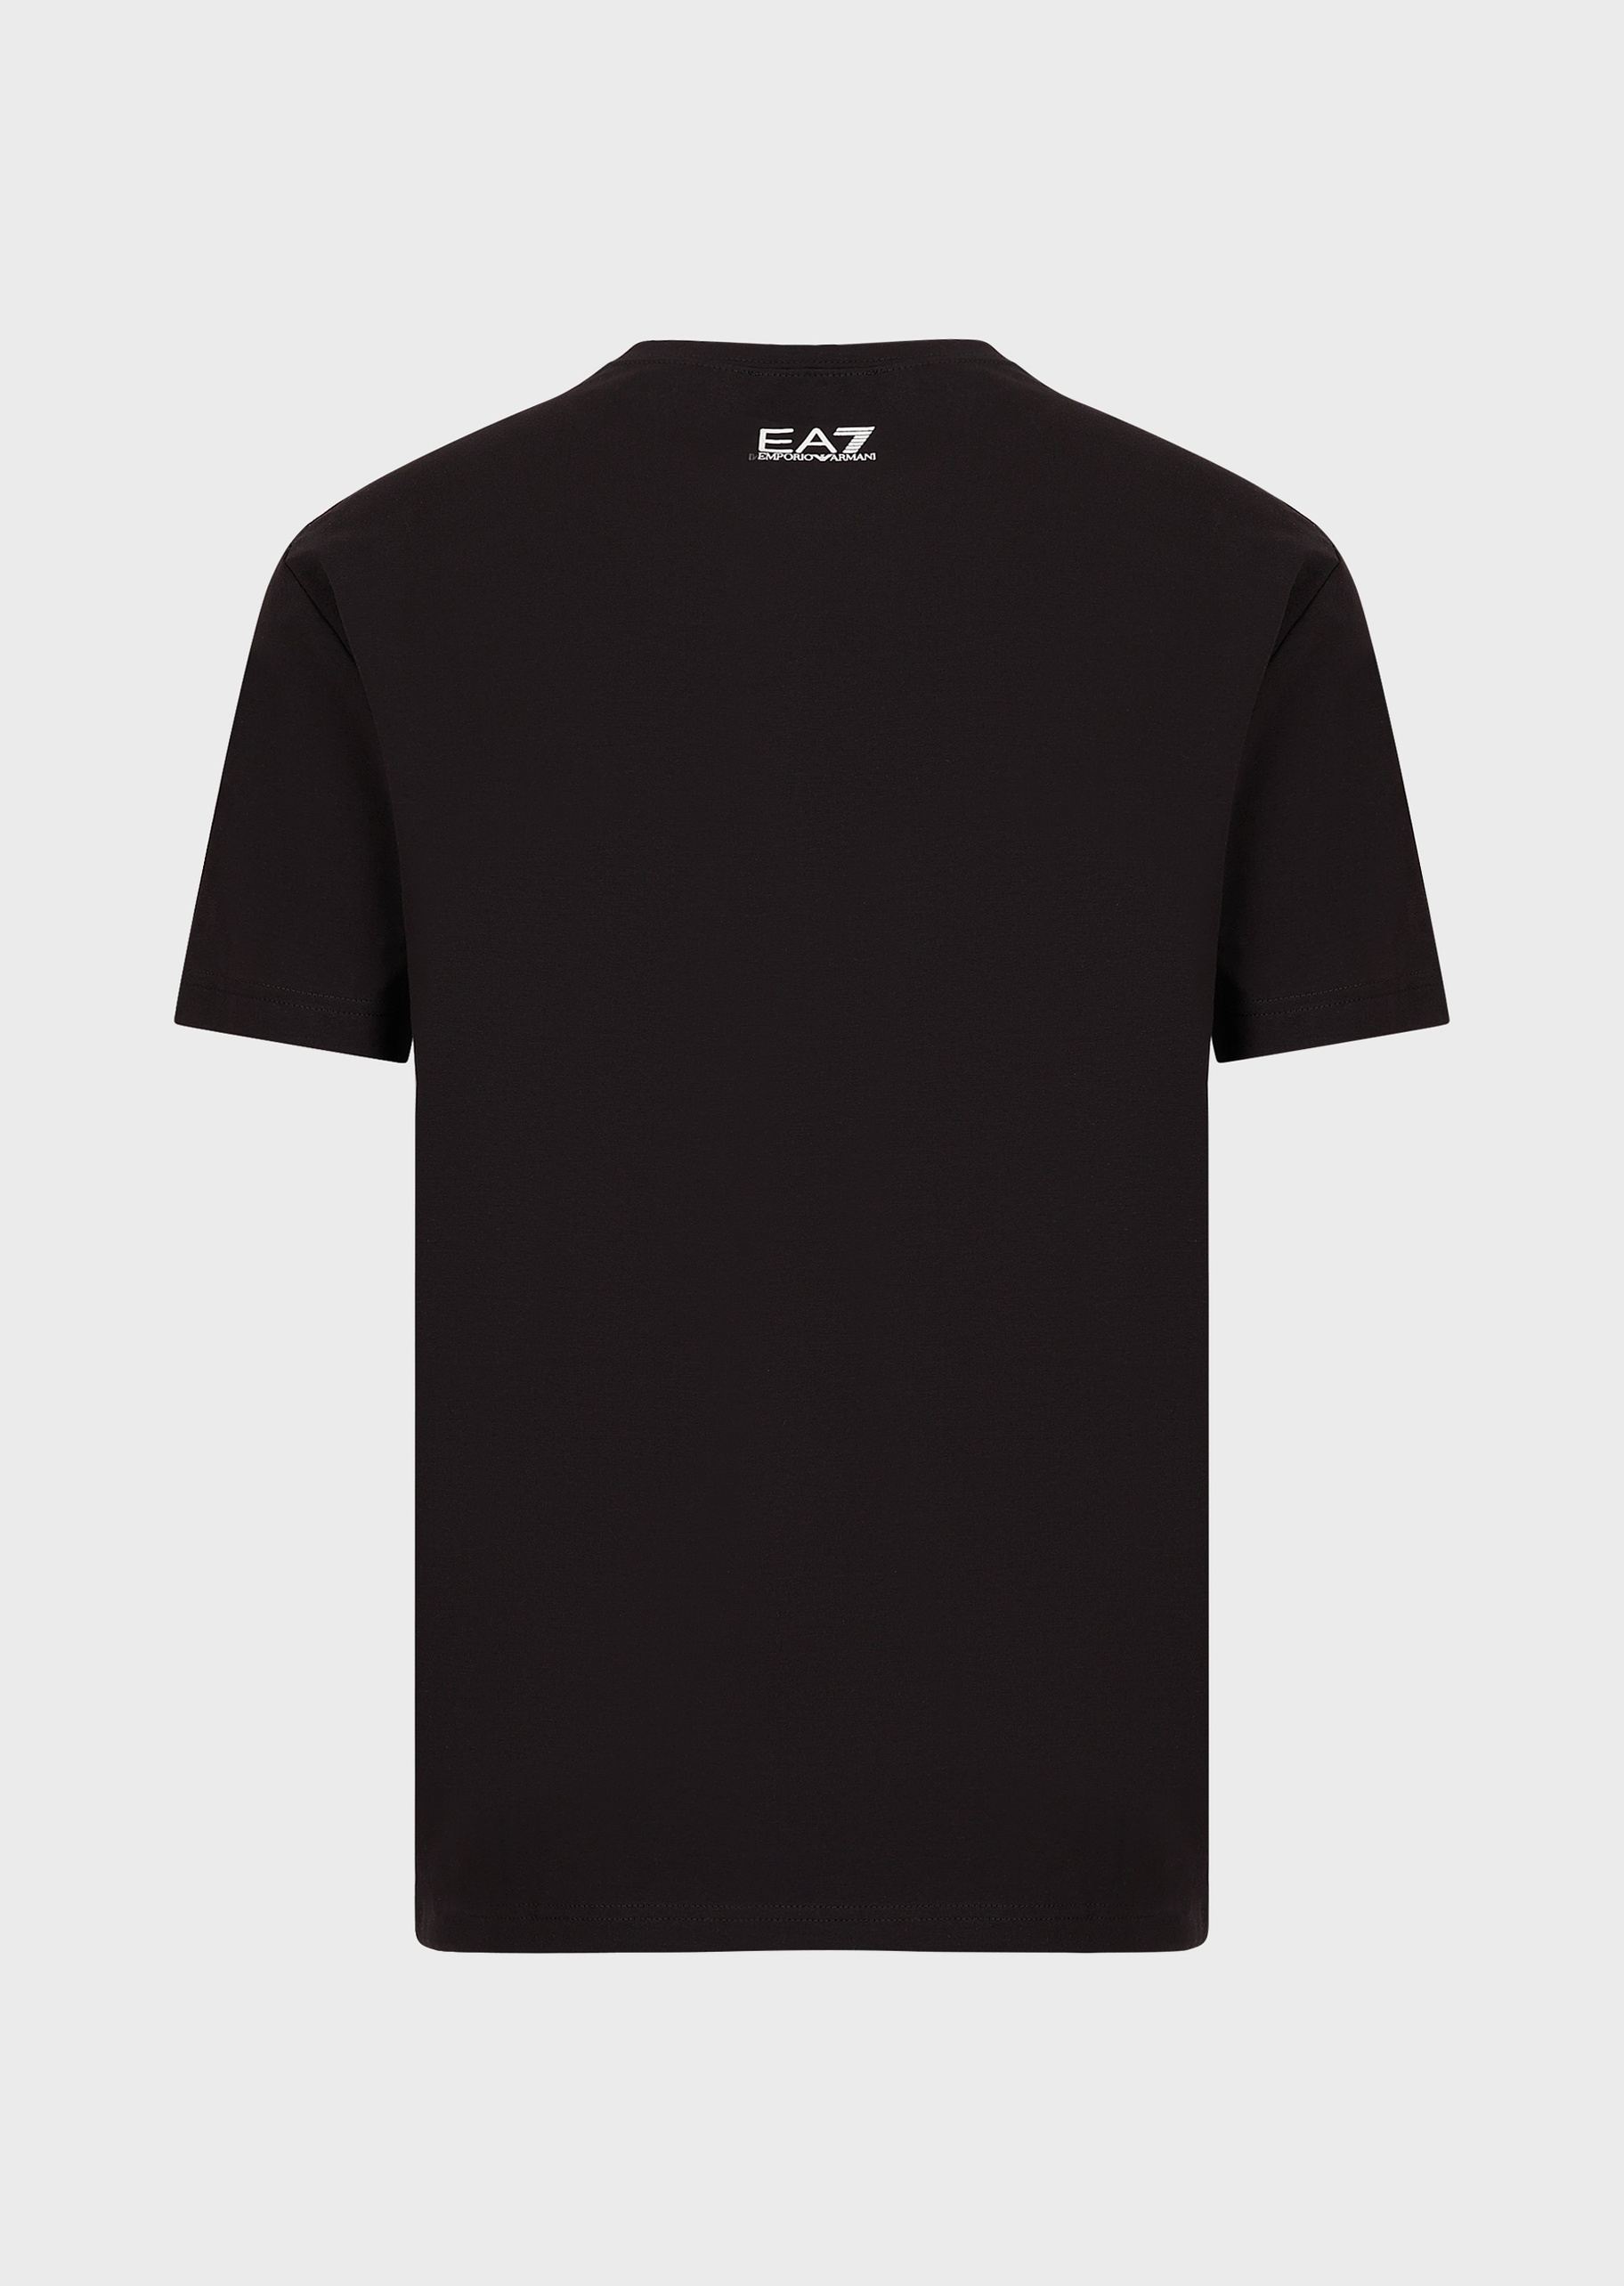 EA7 双色大标识圆领T恤